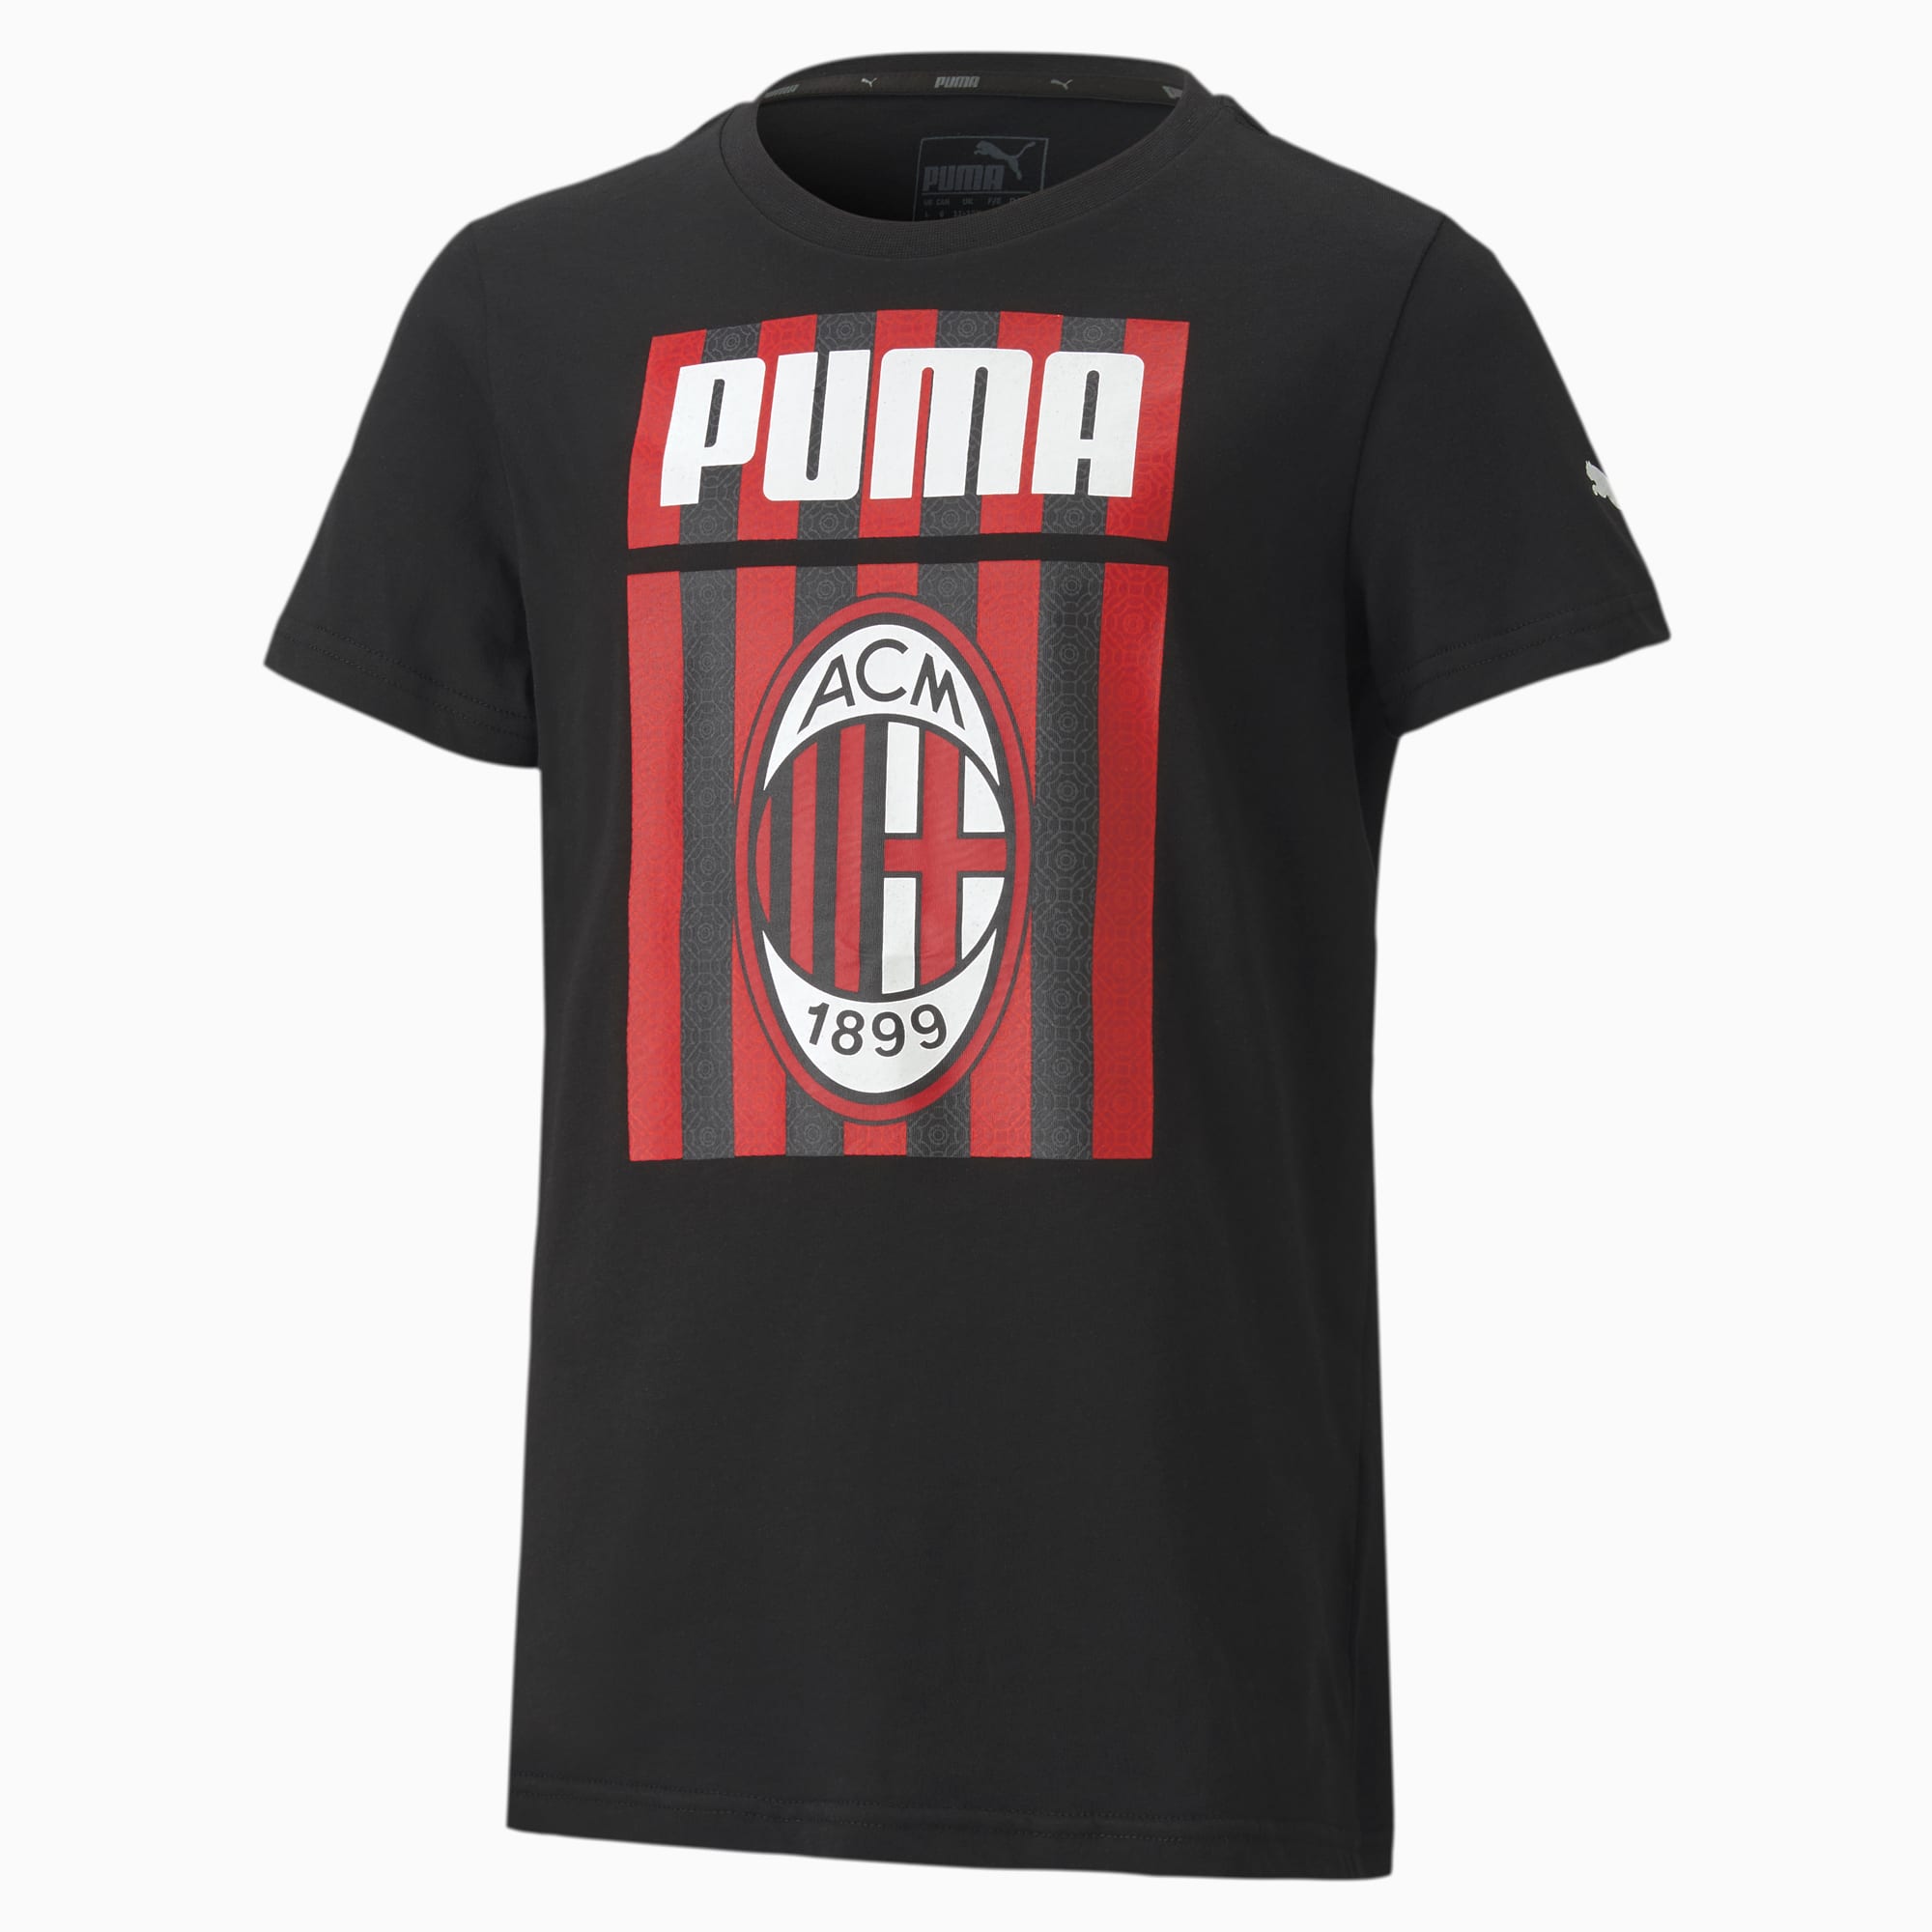 Image of PUMA AC Milan ftblCore Graphic Youth Fußball T-Shirt Für Kinder | Mit Aucun | Schwarz/Rot | Größe: 176